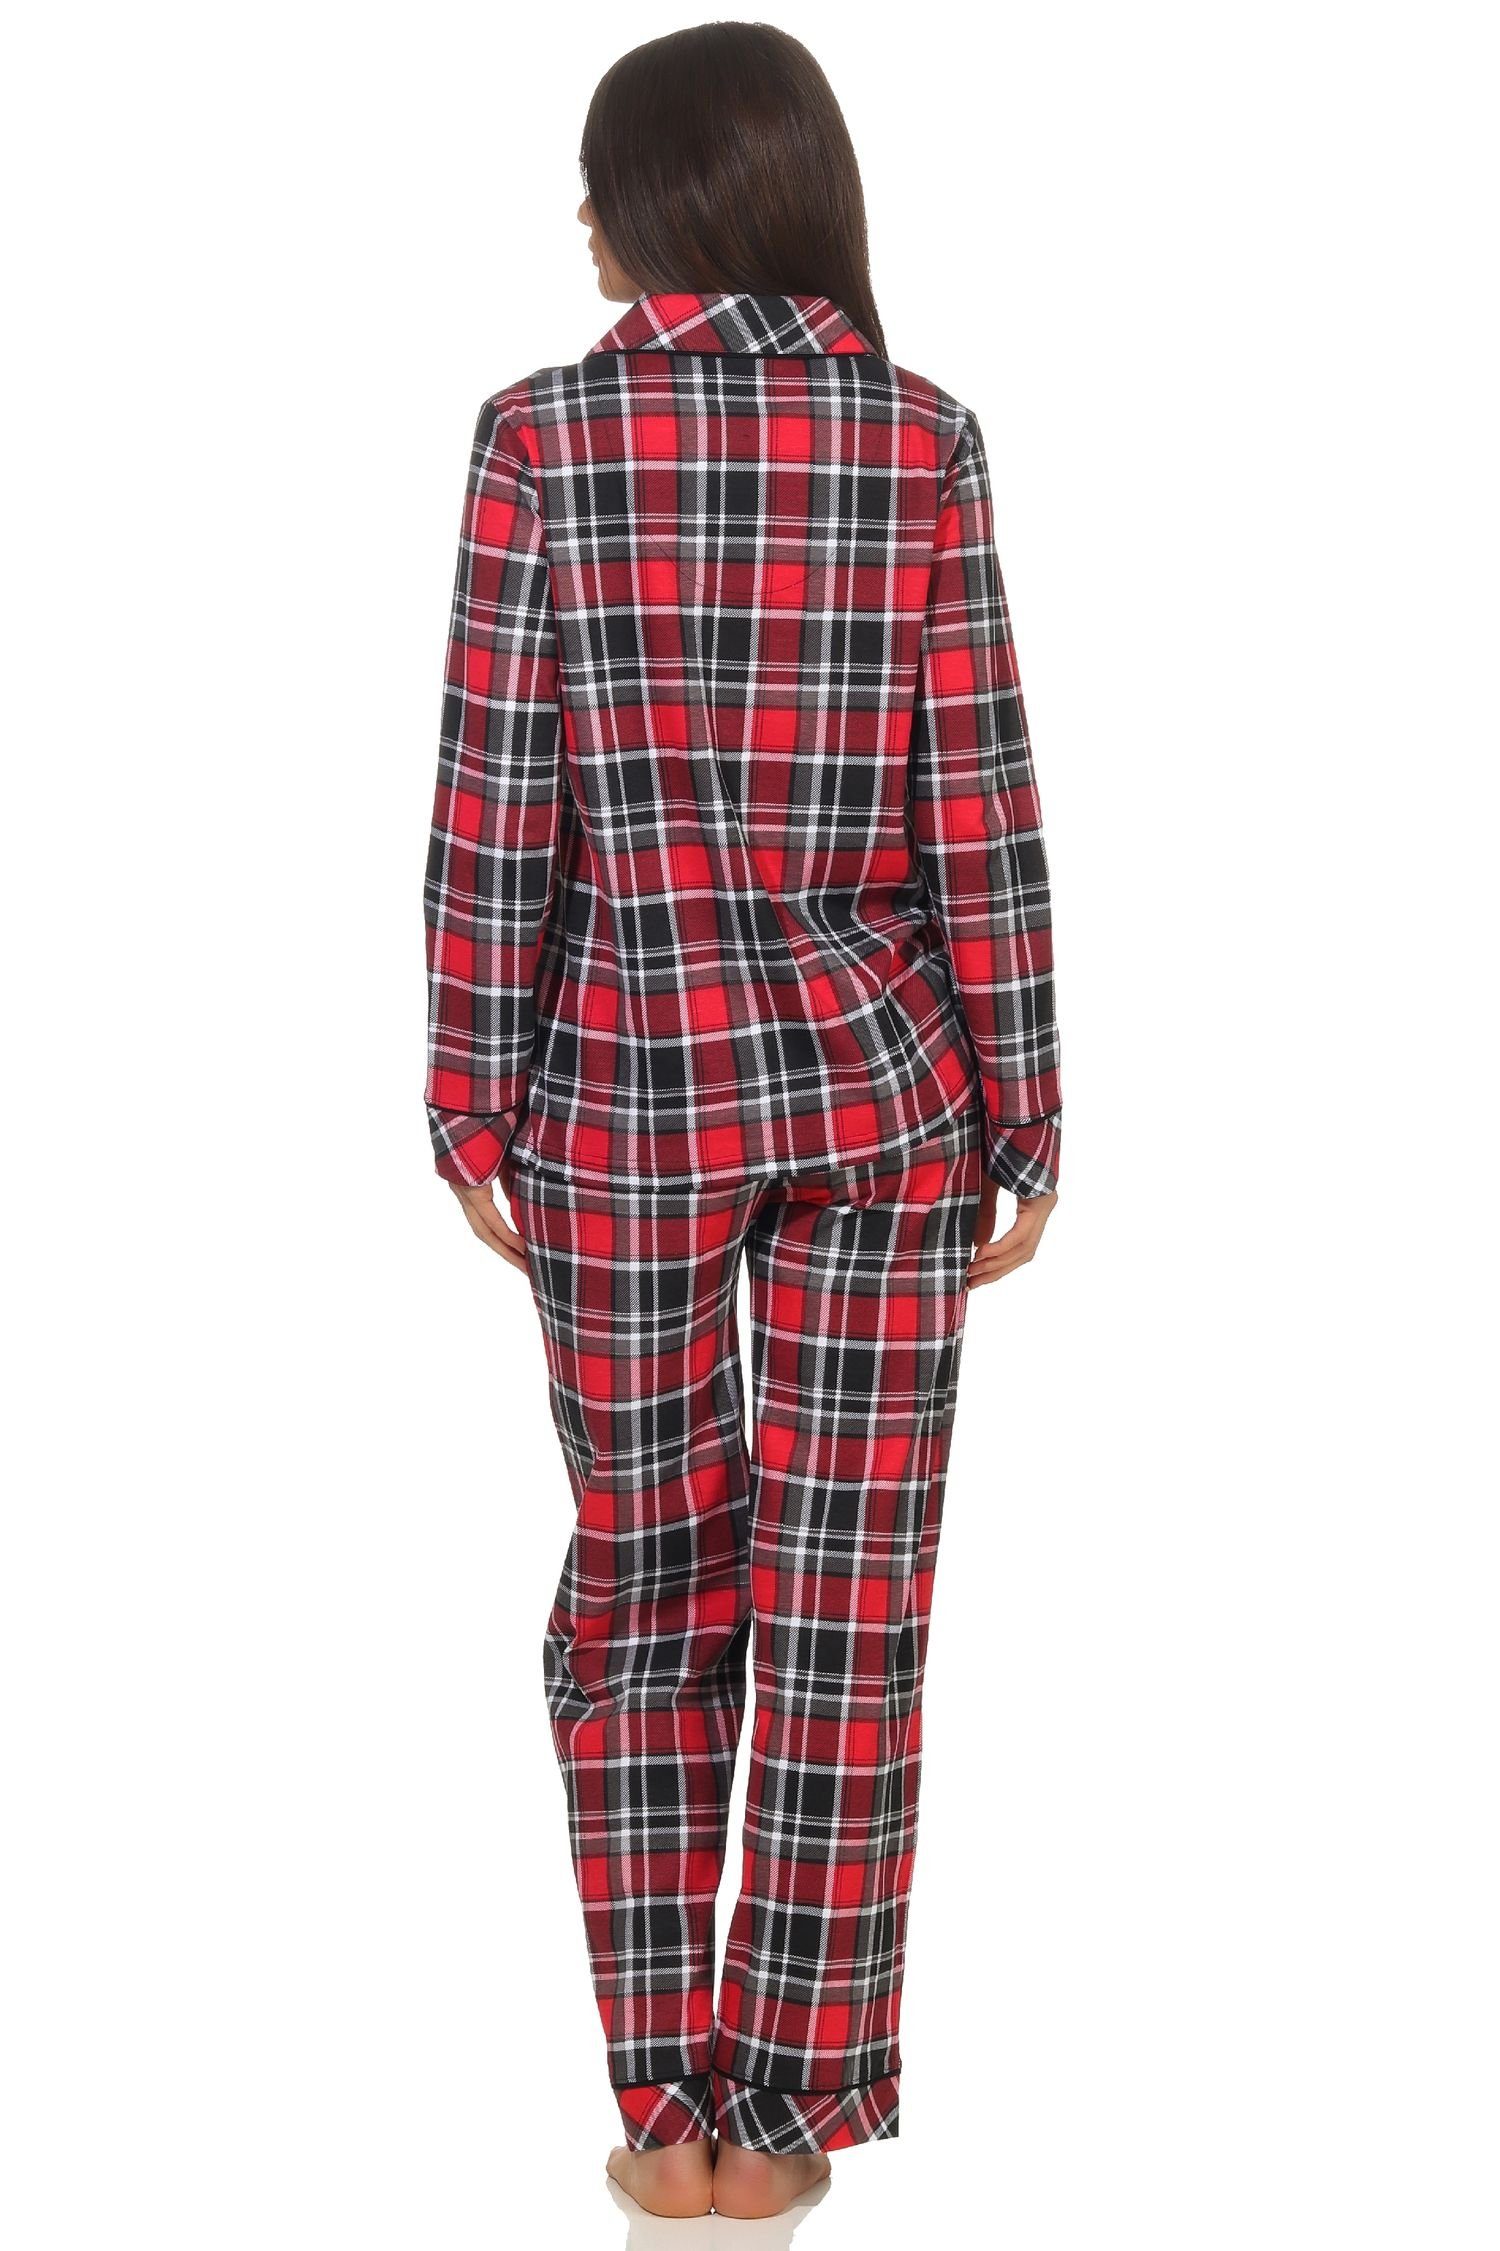 Normann Pyjama Damen Single in durchknöpfen Optik Karo Pyjama Jersey in Qualität zum